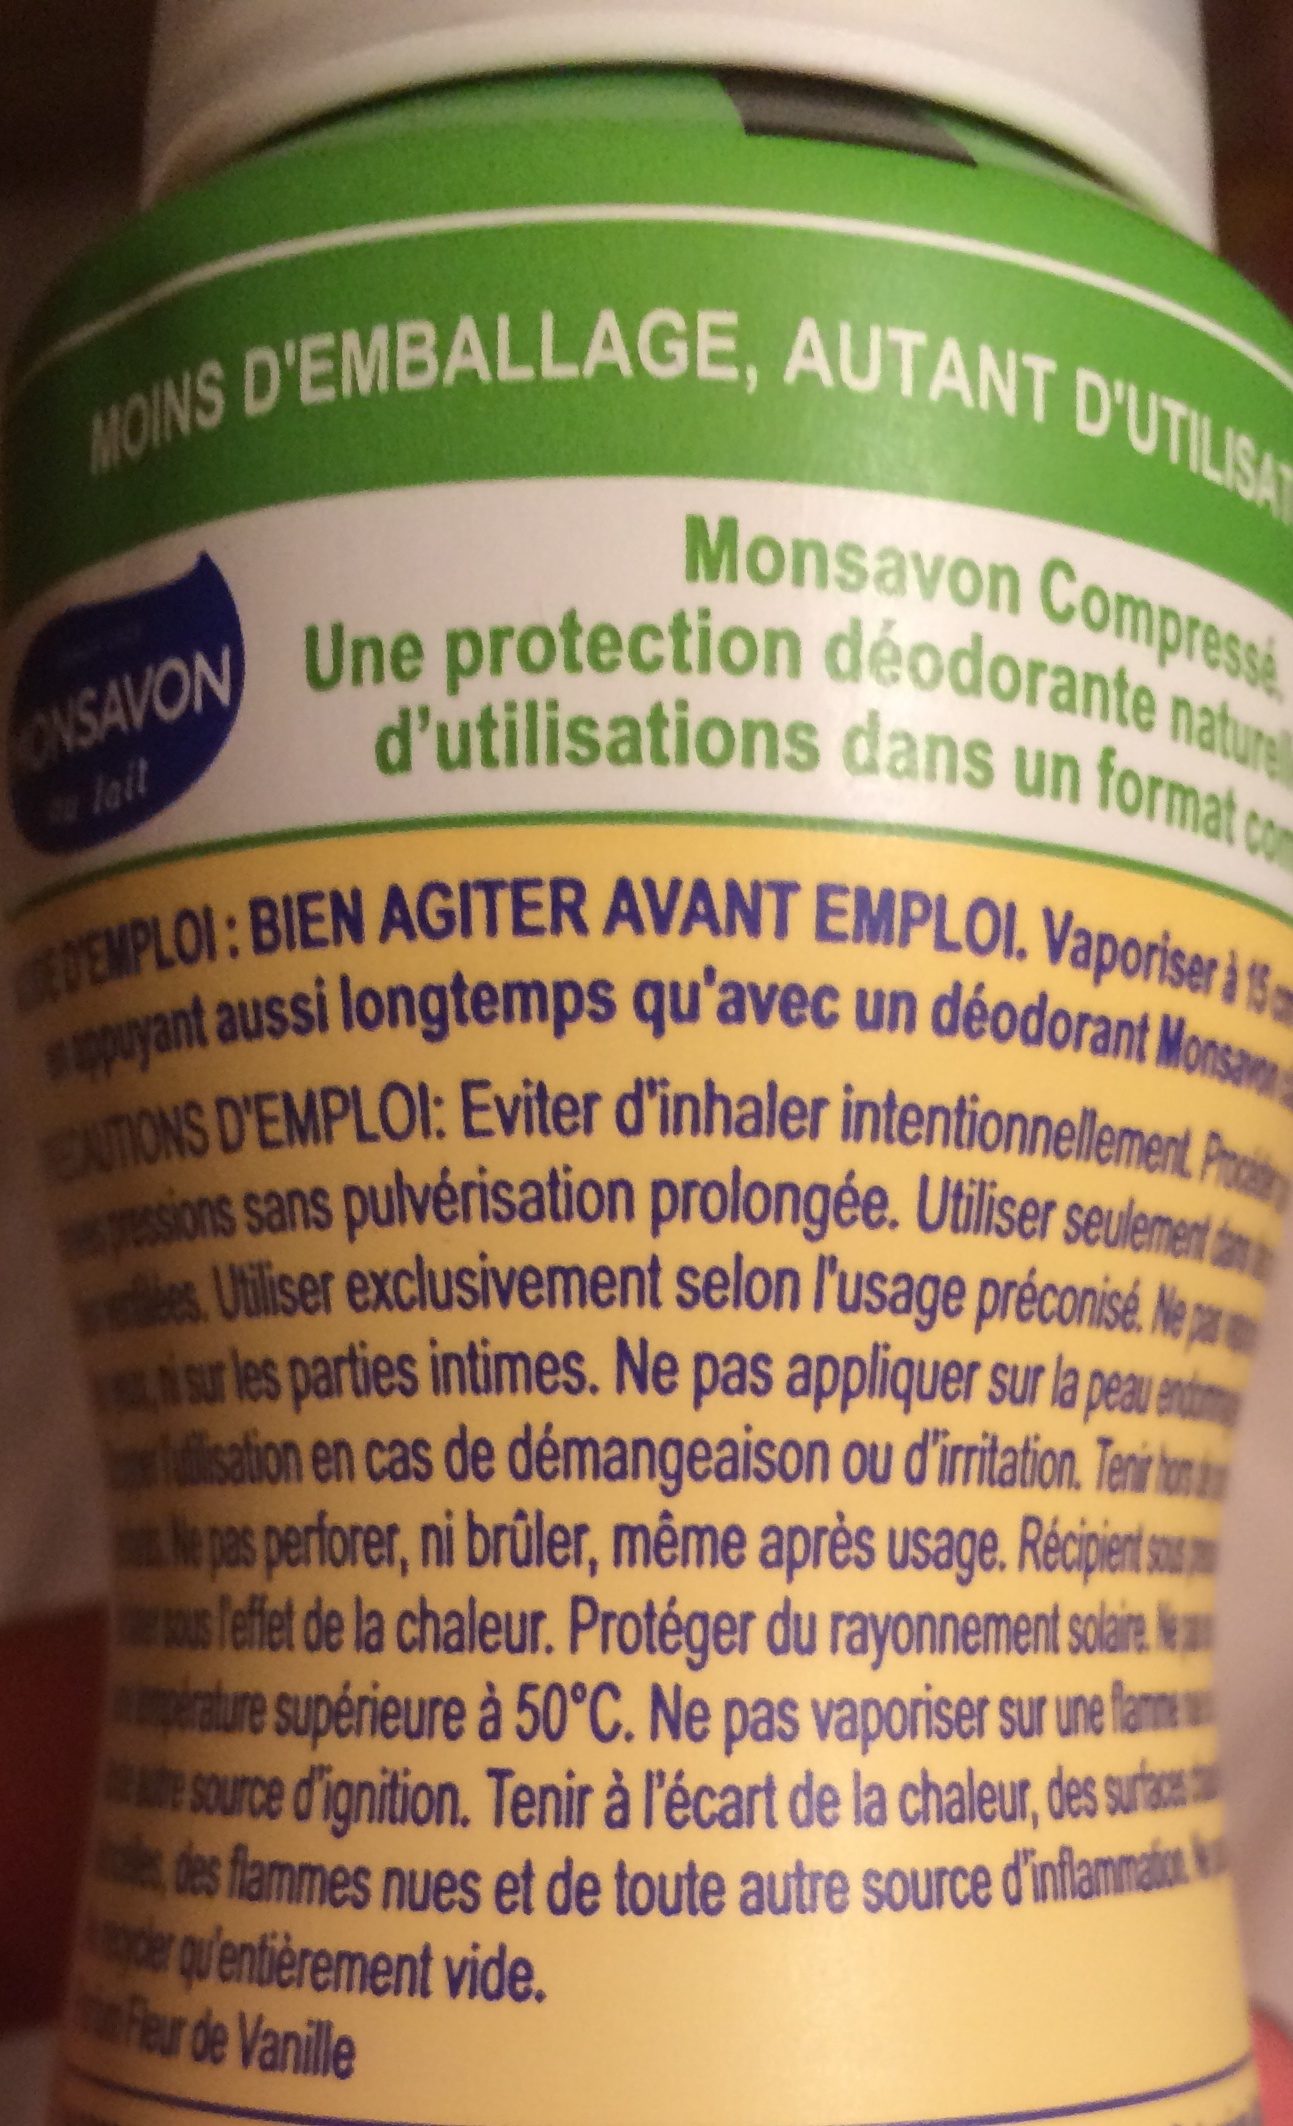 Monsavon Déodorant Femme Spray Compressé Vanille Toute Délicate 100ml - Ingrédients - fr